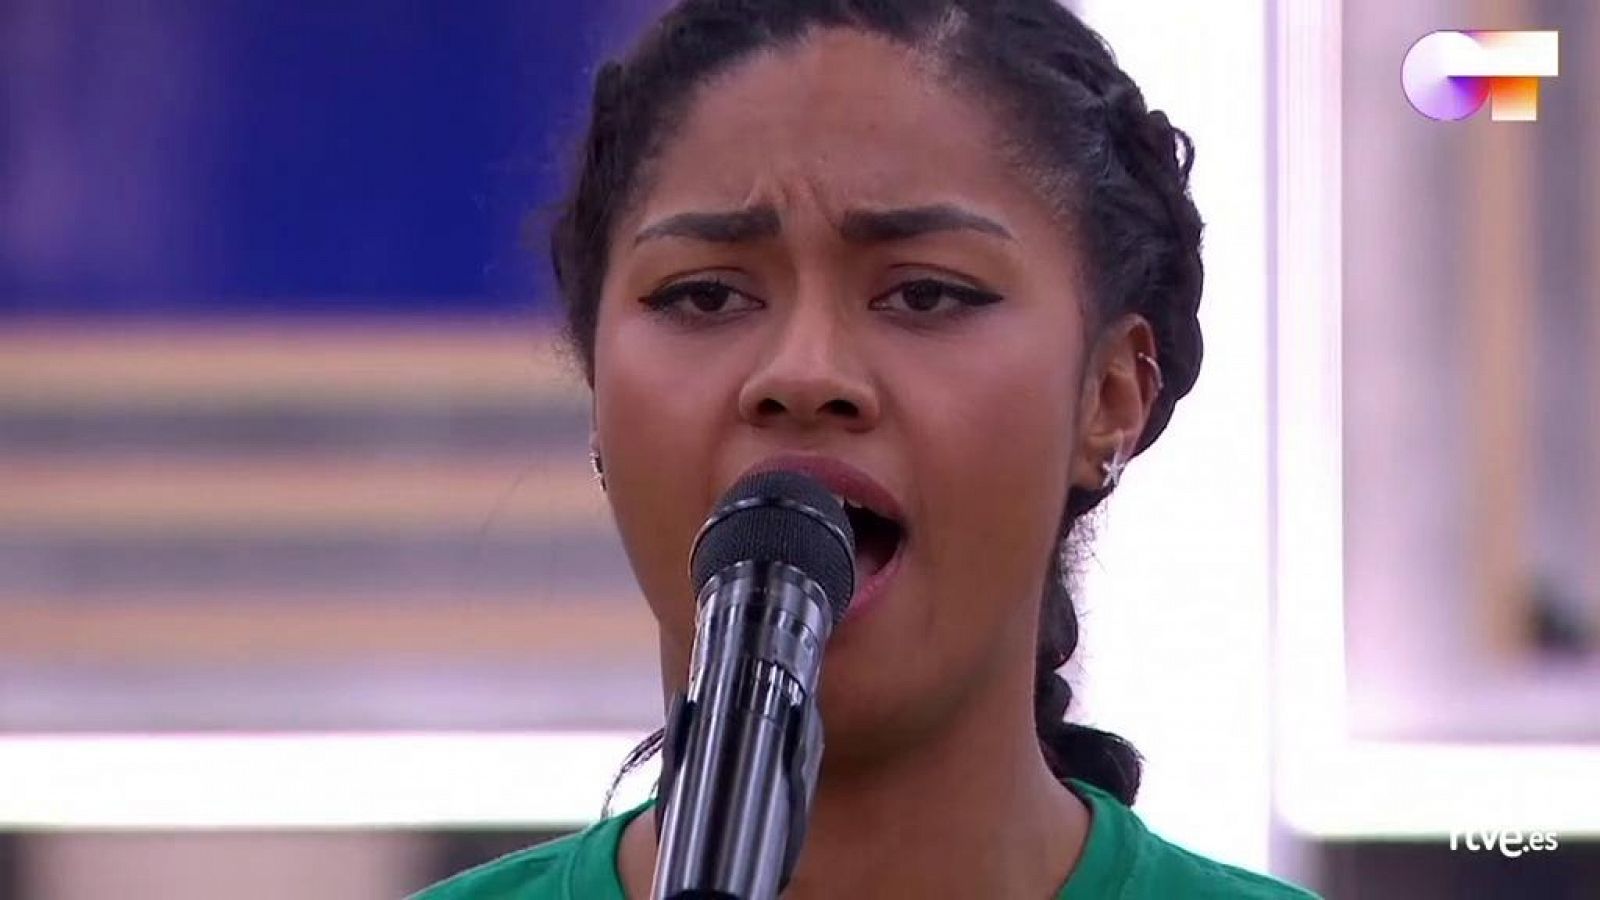 Nia canta "El triste", de José José (versión de Yuri) en el segundo pase de micros de la Gala 9 de Operación Triunfo 2020